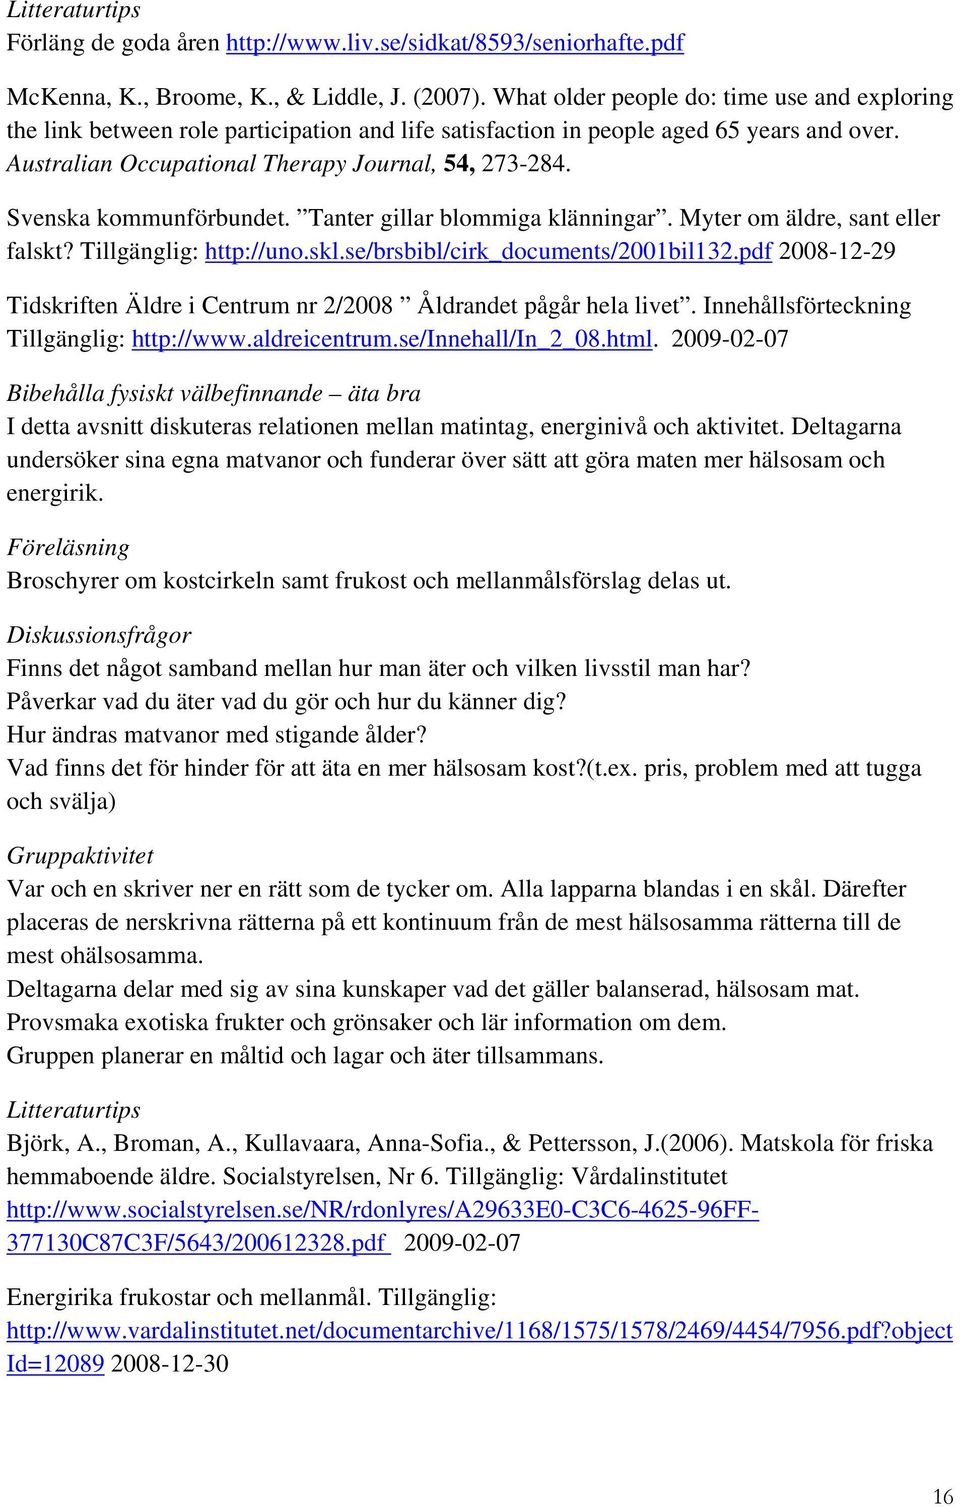 Svenska kommunförbundet. Tanter gillar blommiga klänningar. Myter om äldre, sant eller falskt? Tillgänglig: http://uno.skl.se/brsbibl/cirk_documents/2001bil132.